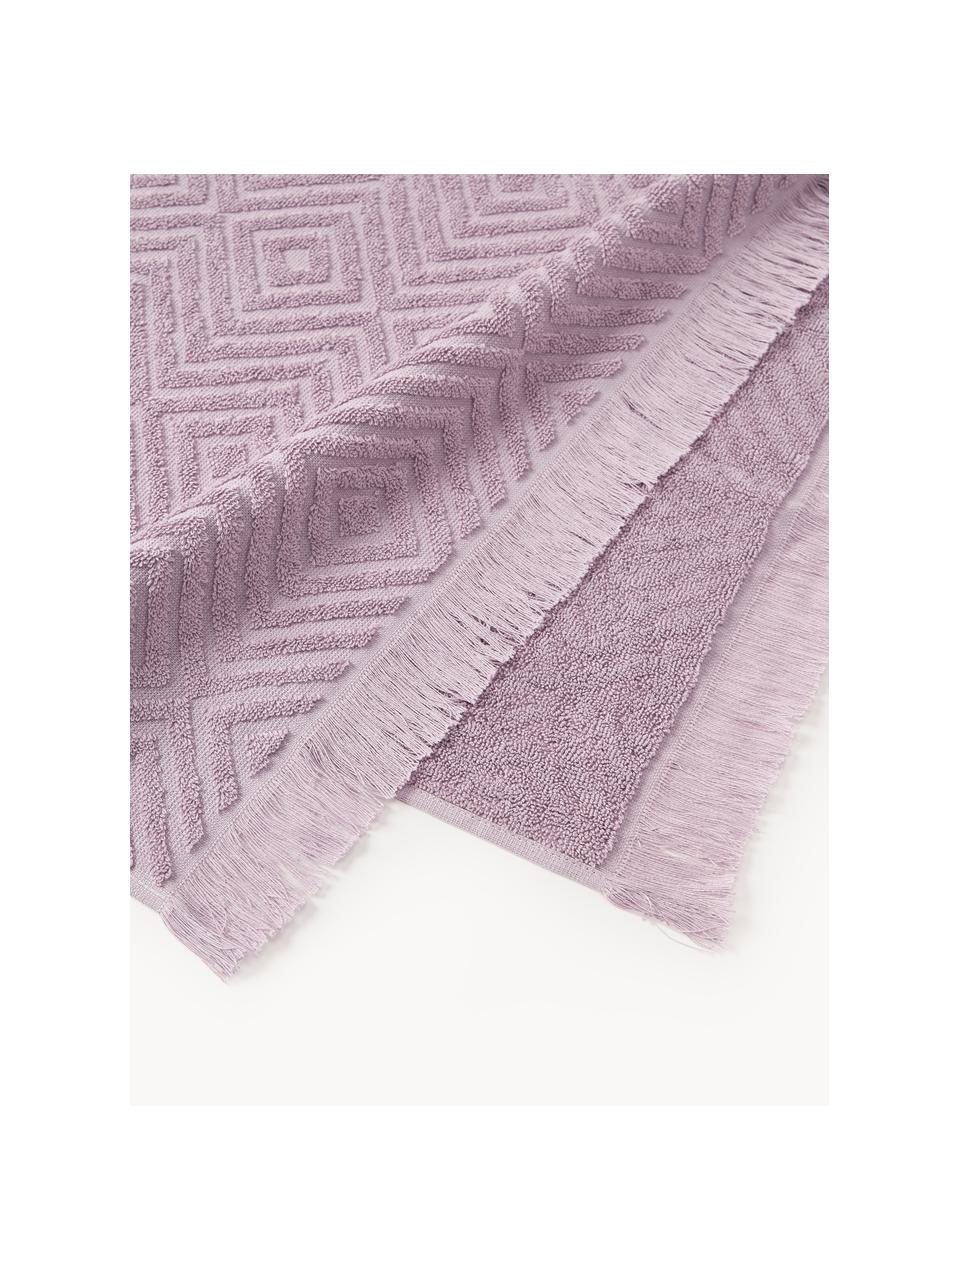 Handtuch Jacqui mit Hoch-Tief-Muster, in verschiedenen Grössen, Lavendel, Handtuch, B 50 x L 100 cm, 2 Stück